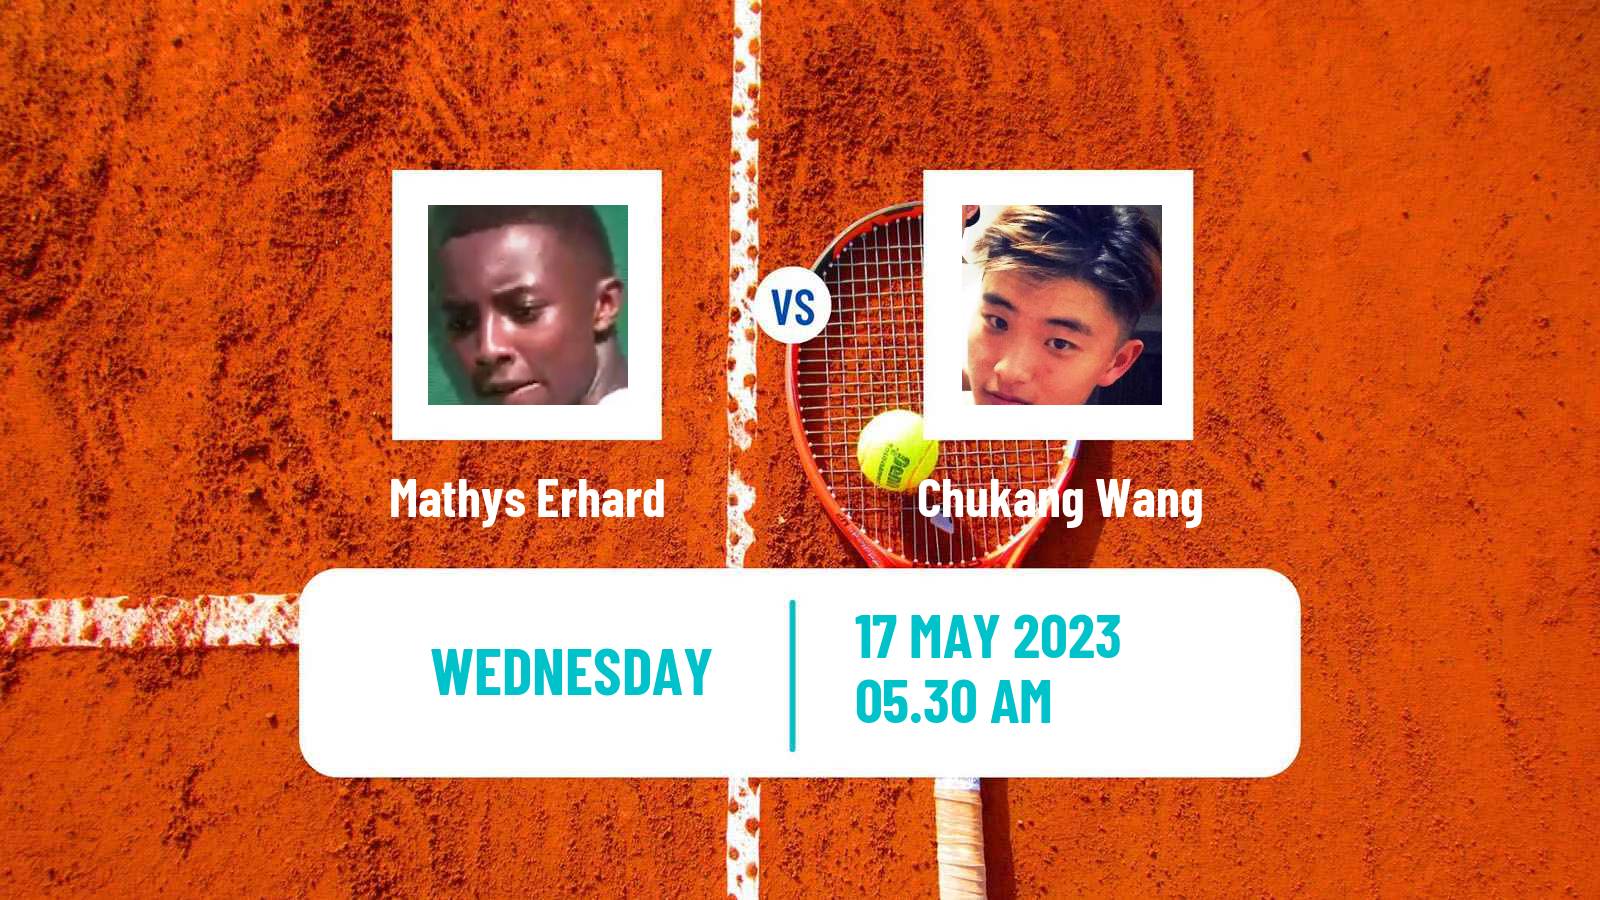 Tennis ITF M25 Kursumlijska Banja 2 Men Mathys Erhard - Chukang Wang